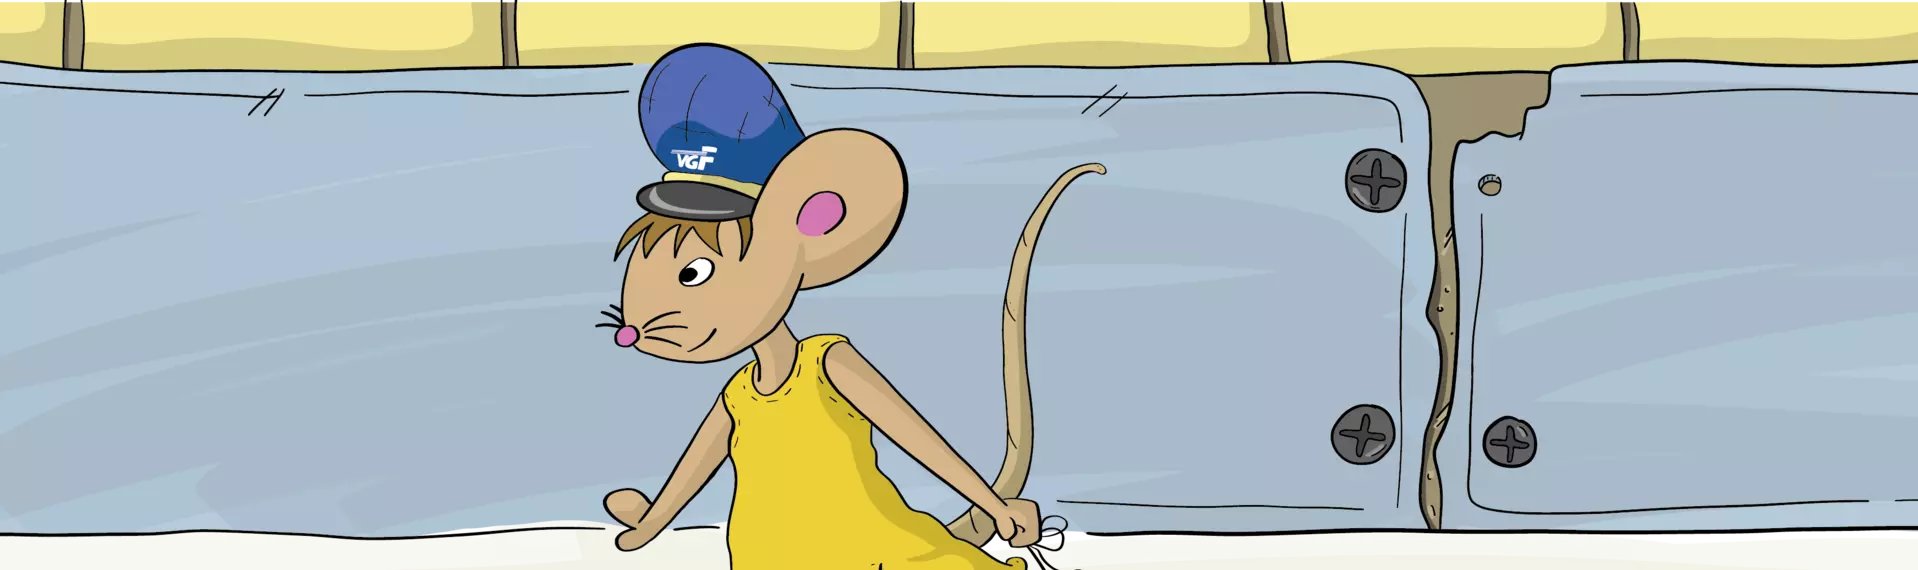 Zeichentrickgrafik mit Lisa der Maus, die ein VGF-Spielzeug mit sich zieht zum Spielen